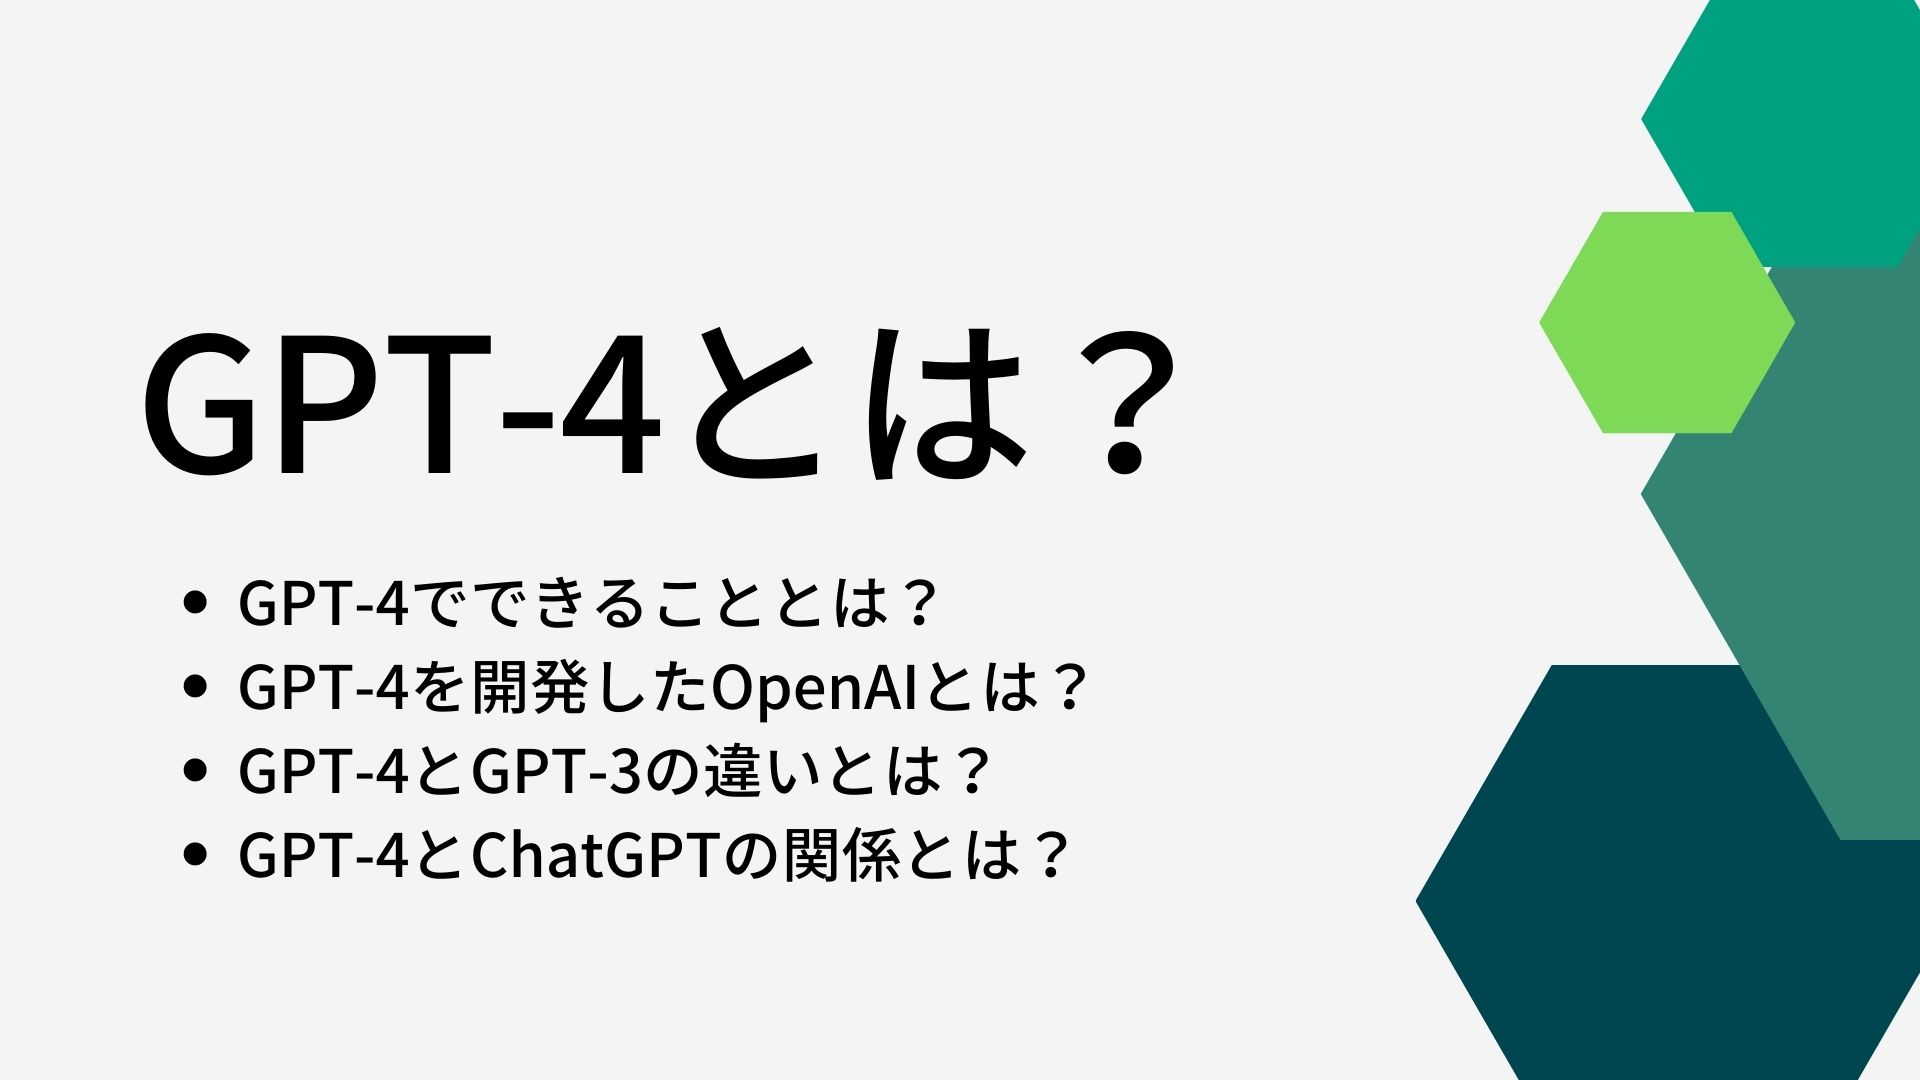 GPT-4とは何か